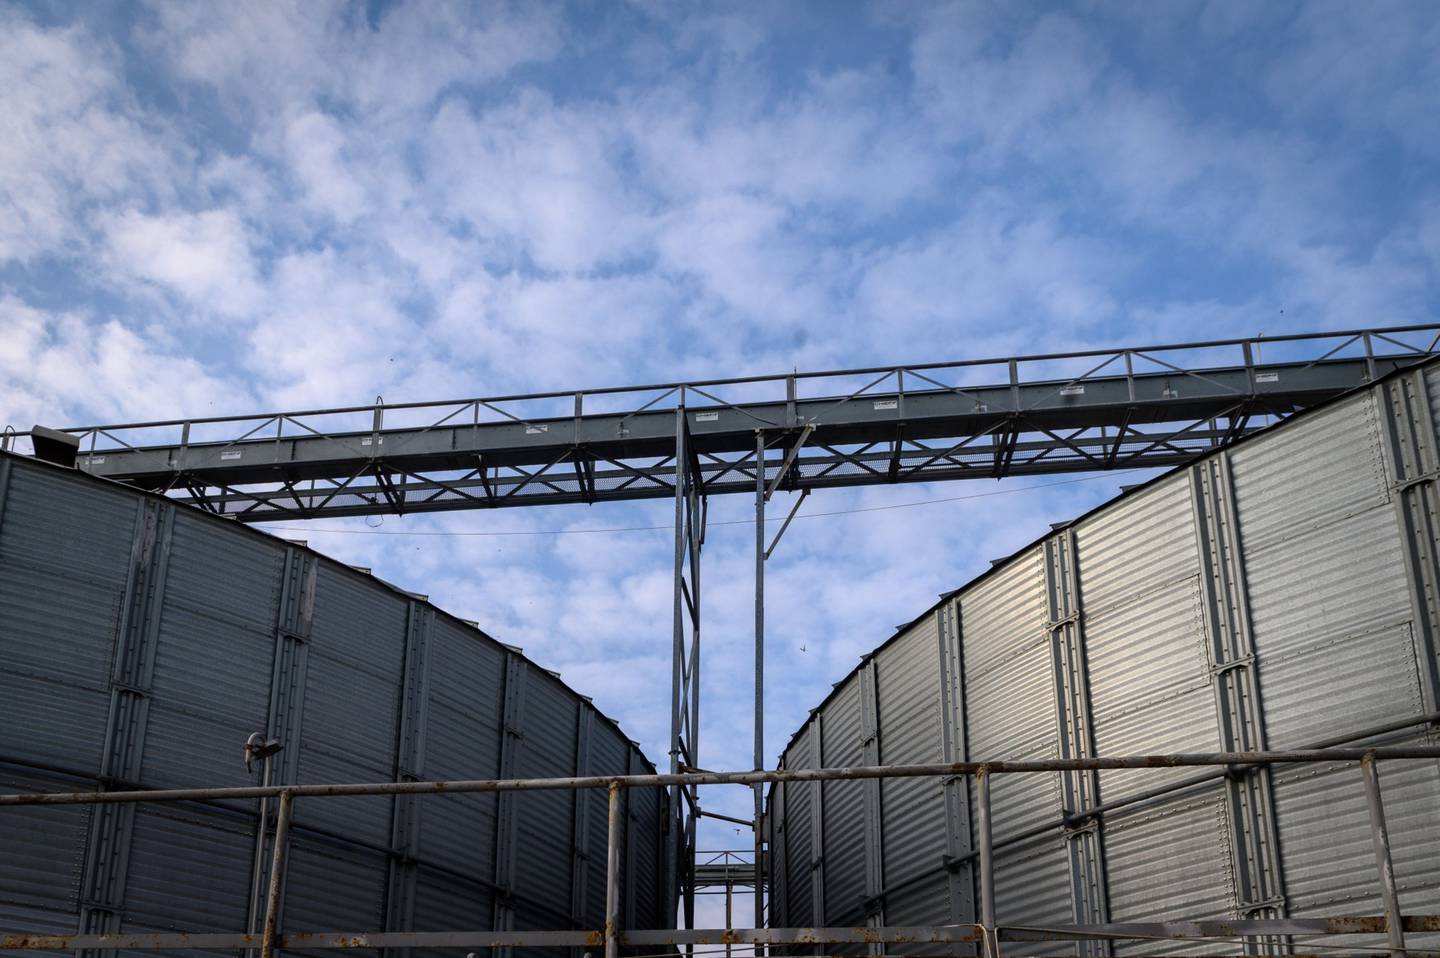 Buena parte del grano ucraniano está atascado en silos ante la imposibildad de exportarlo